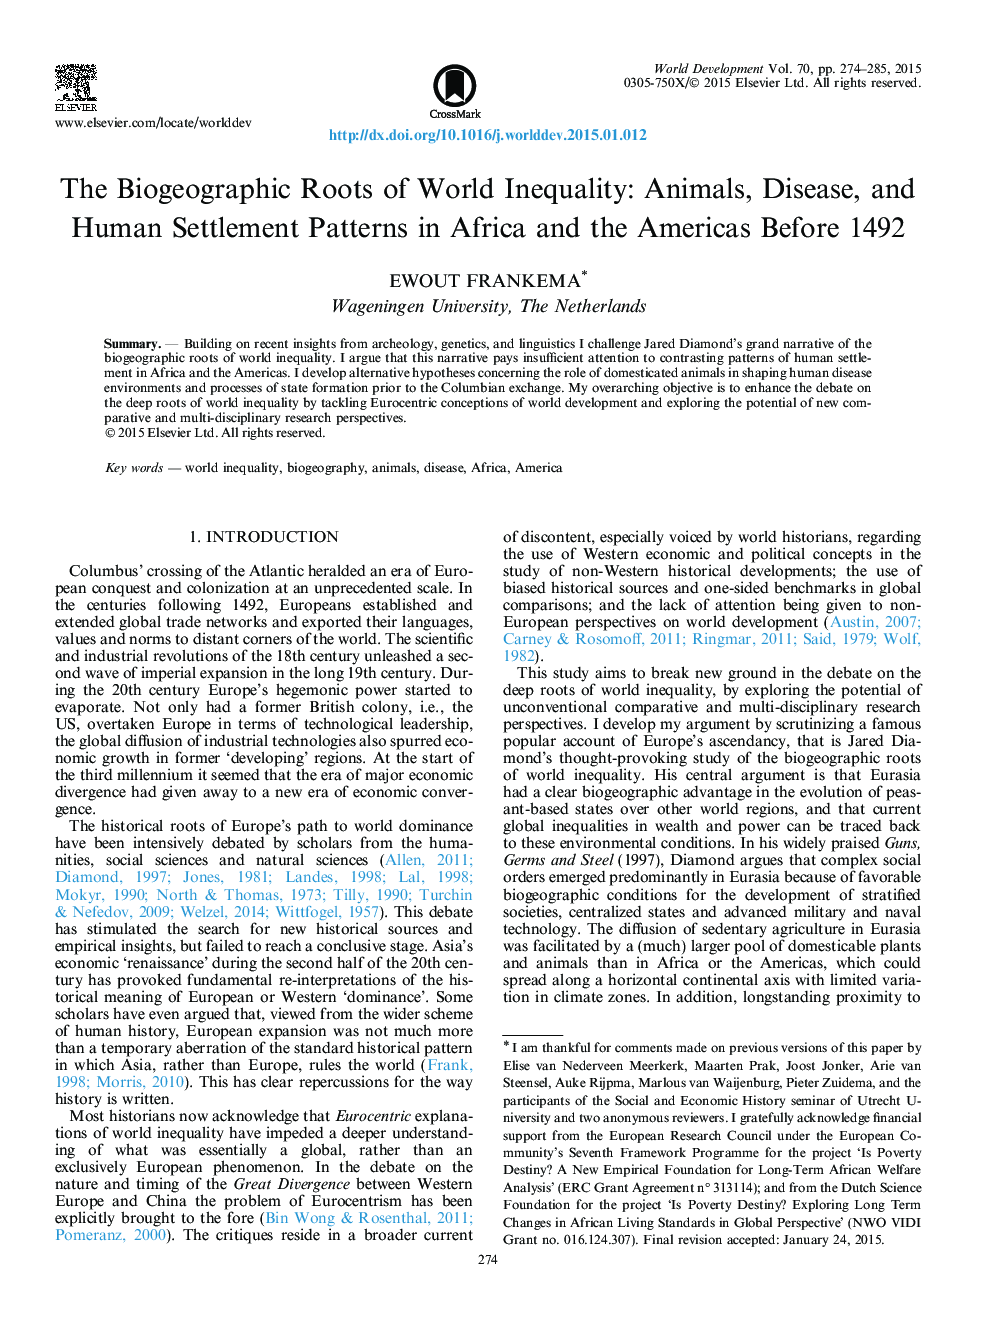 ریشه های بیوگرافی نابرابری های جهانی: حیوانات، بیماری ها و الگوهای انسانی در آفریقا و آمریکا قبل از سال 1492 